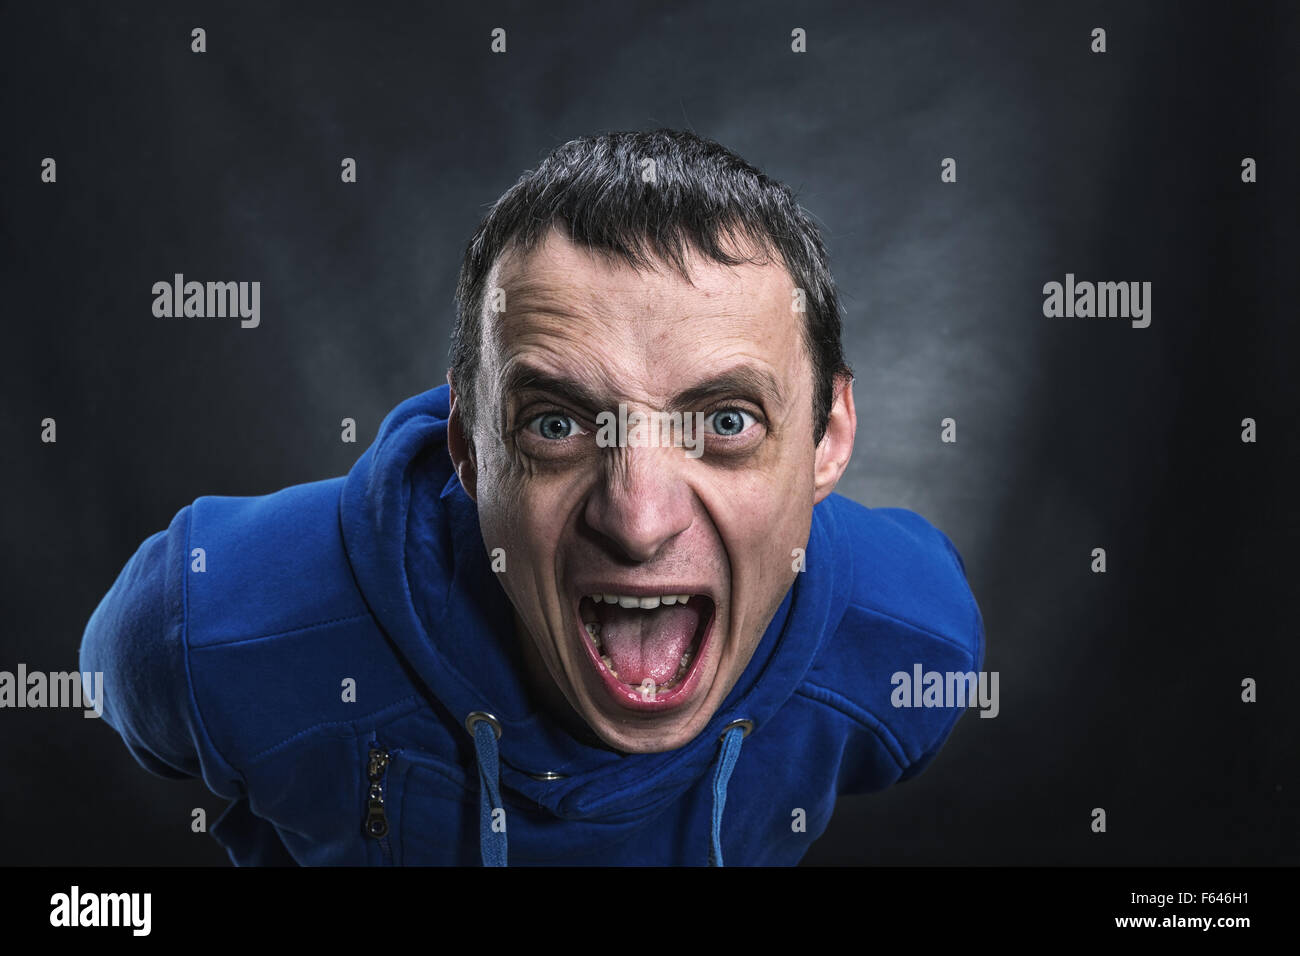 Agressive man's face in the dark Stock Photo